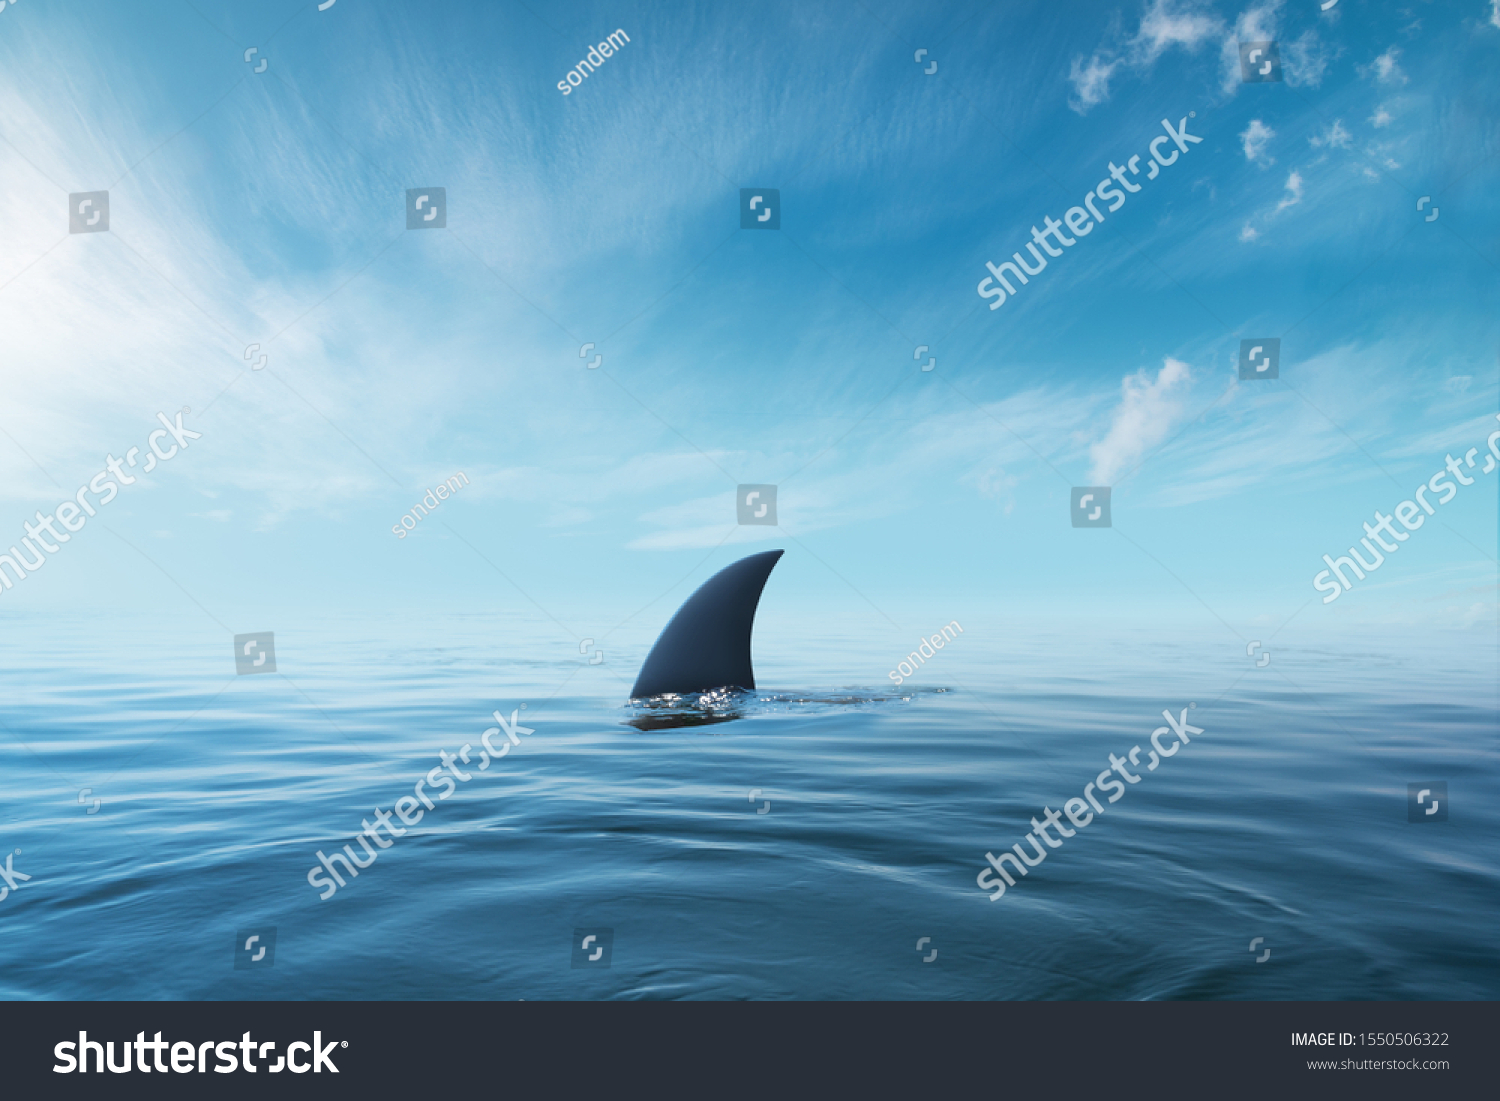 shark fin on surface of ocean agains blue cloudy sky #1550506322